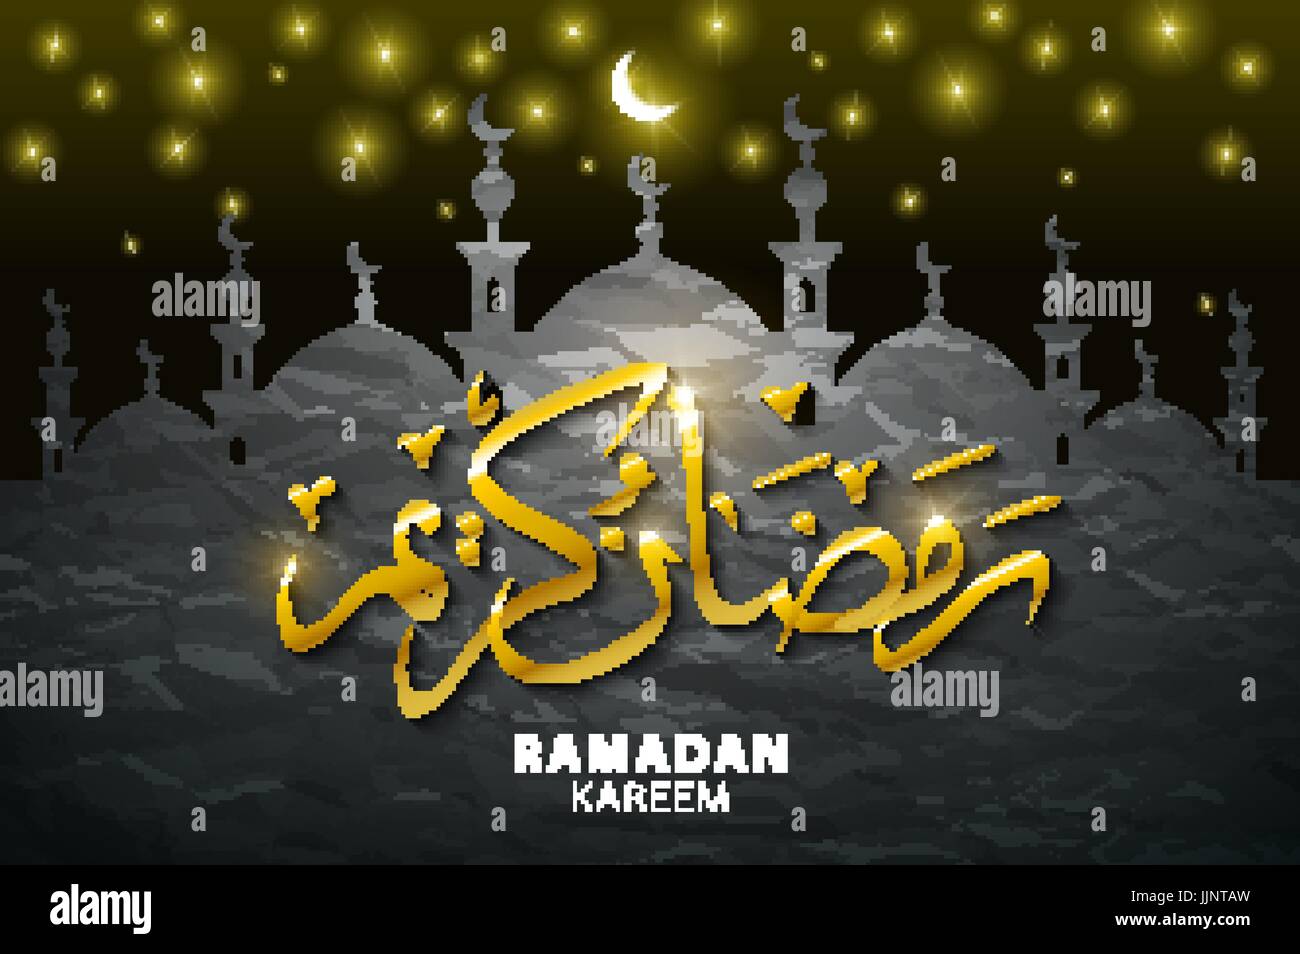 Ramadan greetings in Arabic script. An Islamic greeting card for ...